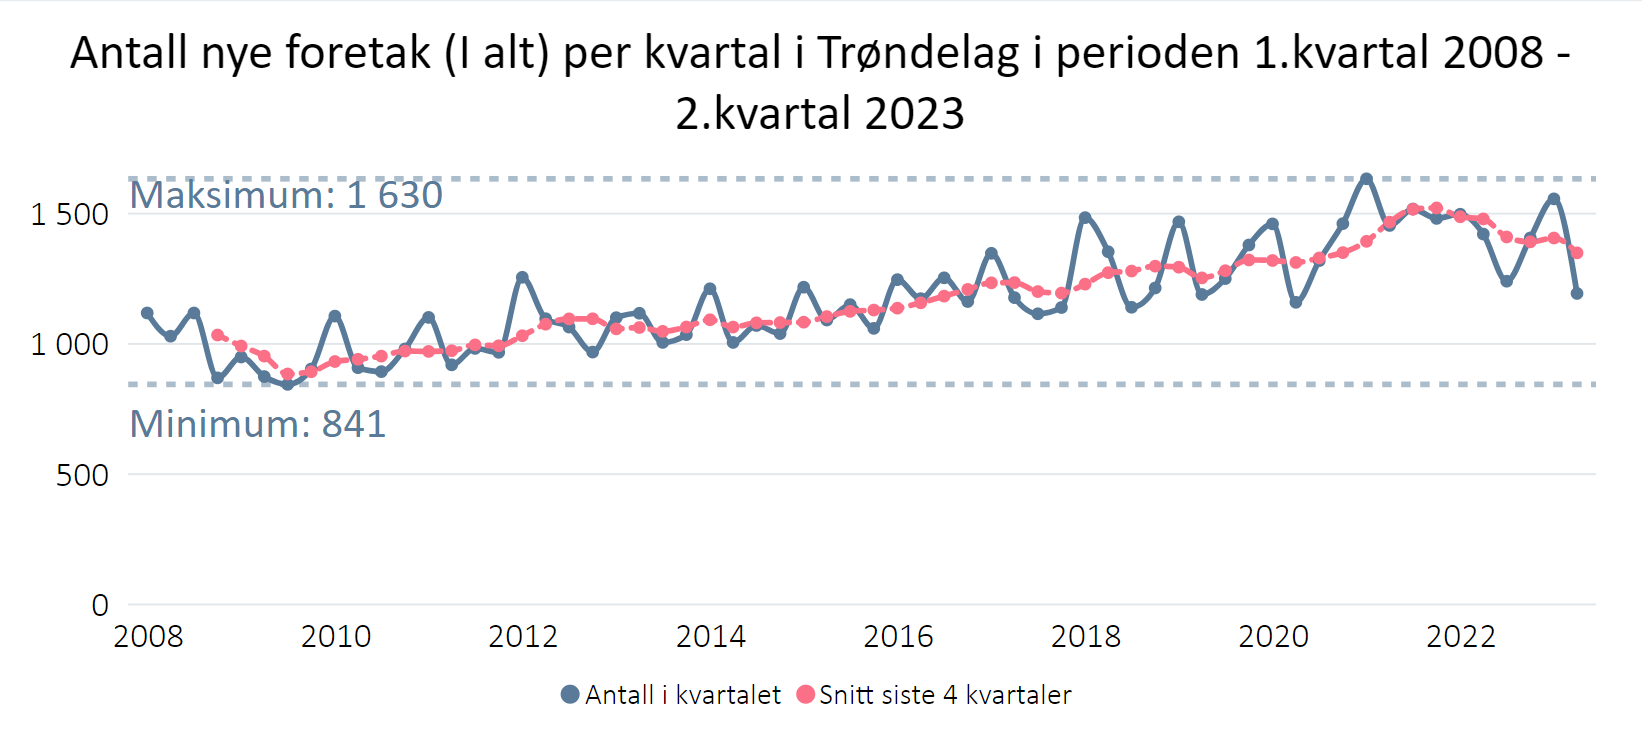 Antall nye foretak per kvartal i Trøndelag i perioden 1.kvartal.2008-2.kvartal 2023